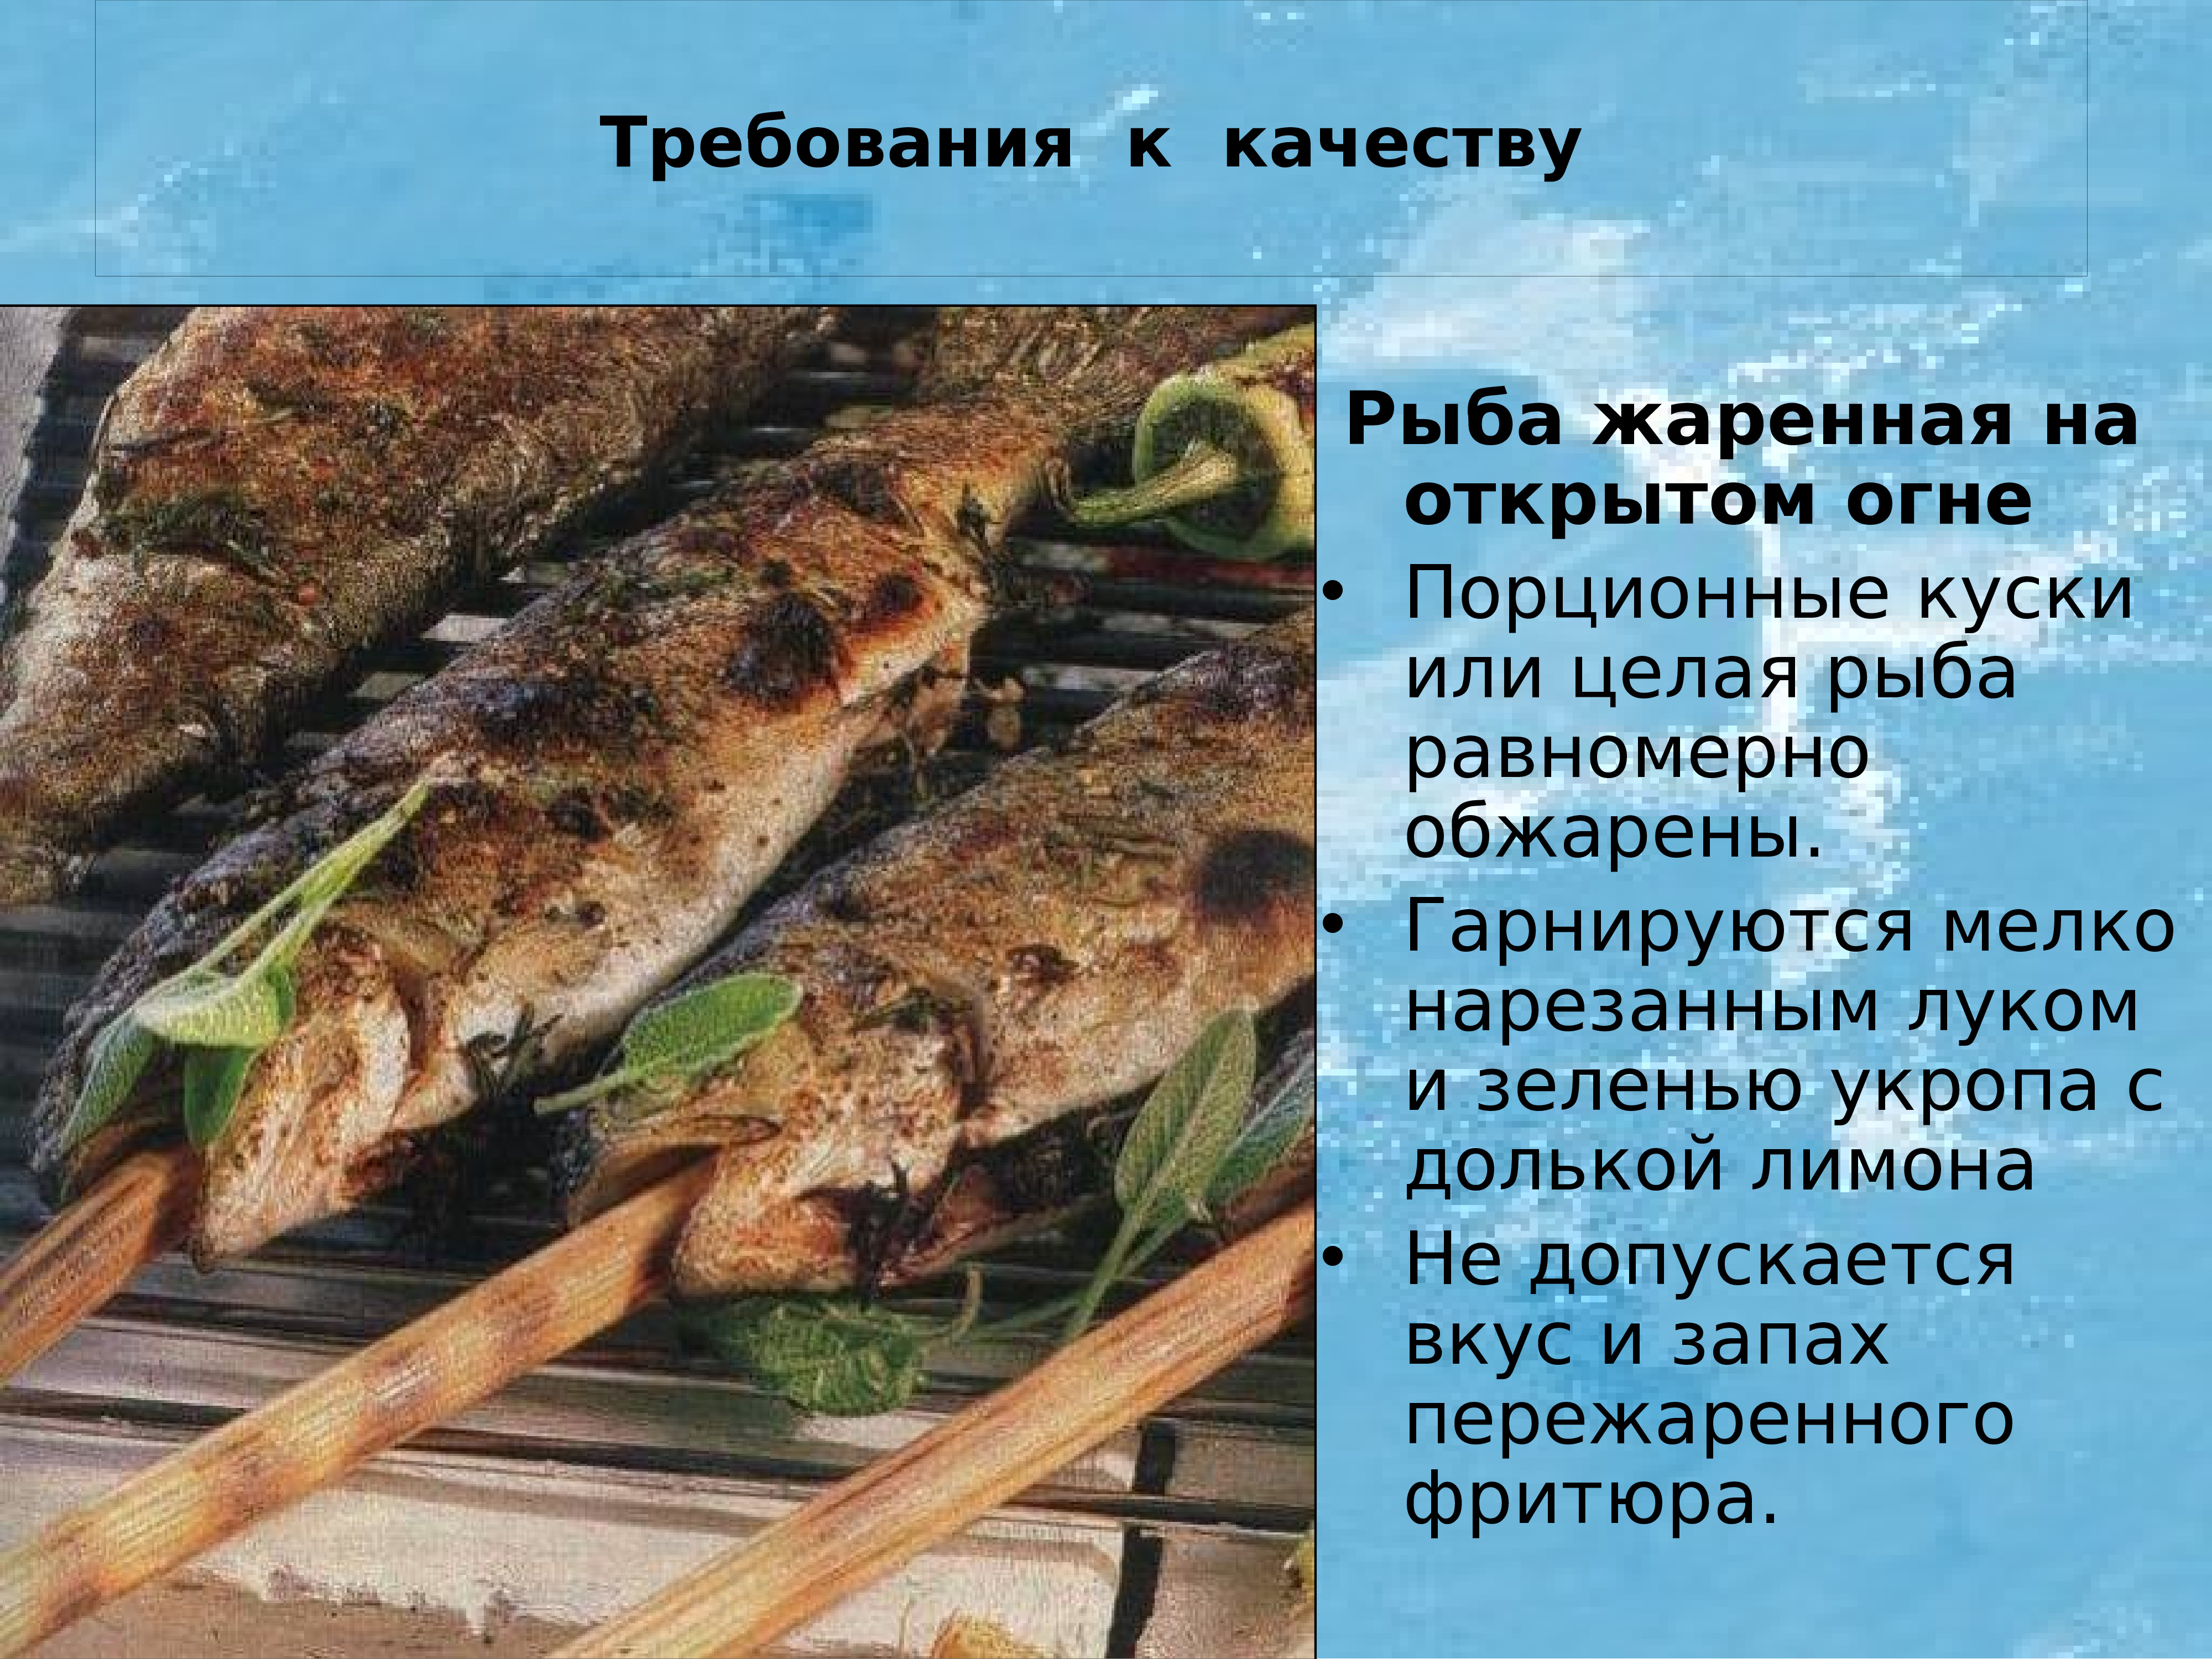 Требования к блюдам из рыбы. Требования к качеству жареной рыбы. Рыба жаренная на открытом огне. Основные требования к качеству рыбных блюд.. Требования к качеству приготовления жареной рыбы.